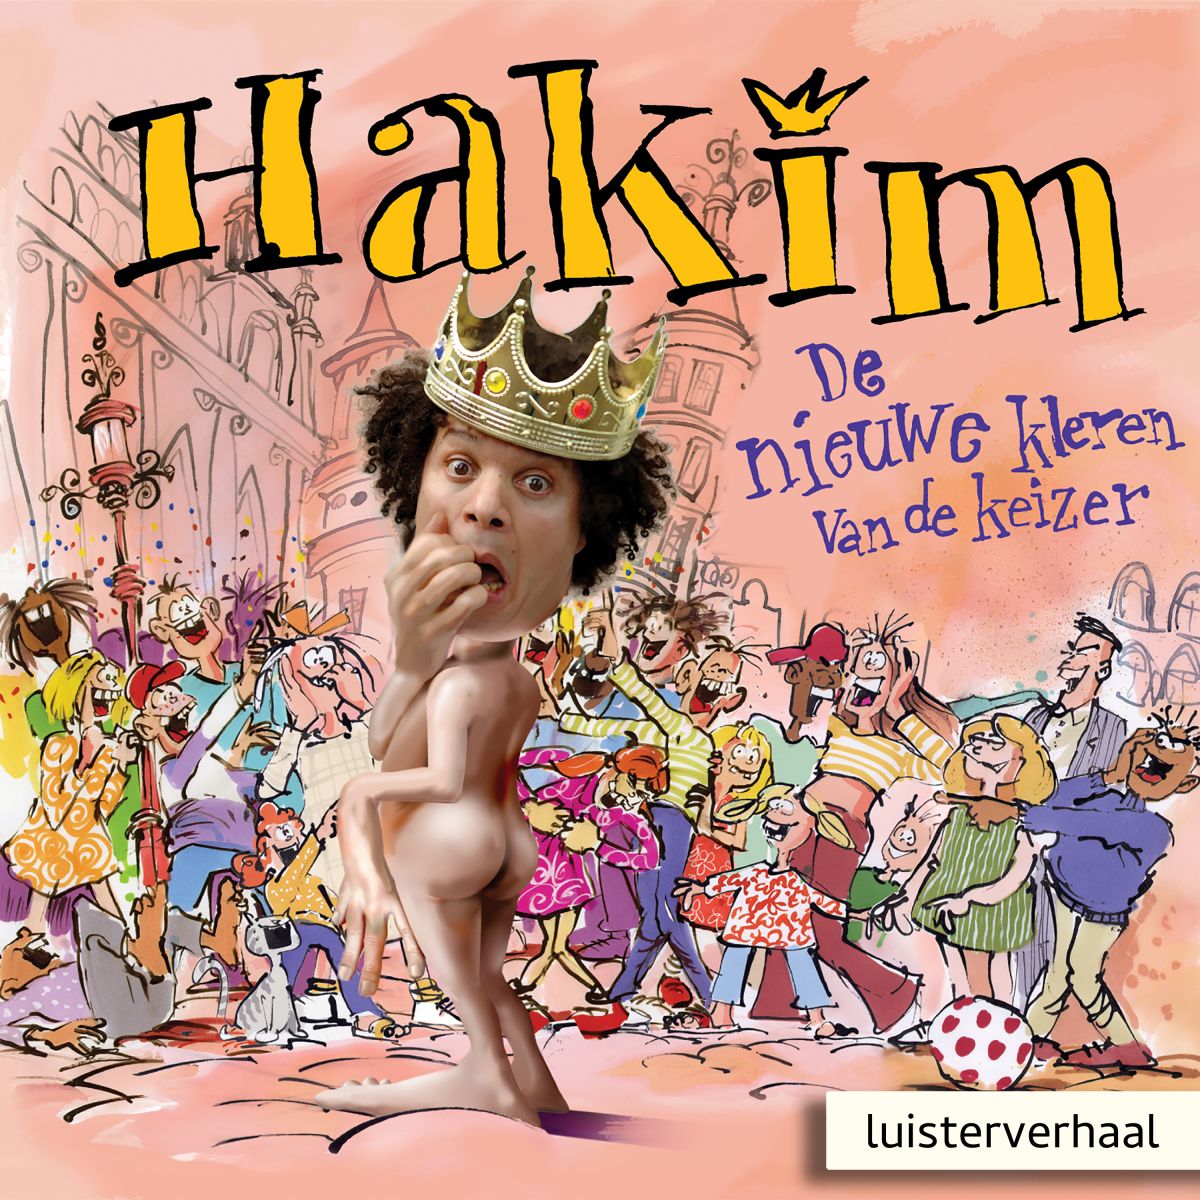 Oost Zuigeling In zoomen Hakim: De nieuwe kleren van de keizer - Kinderliedjes cd's - JINGO ♫